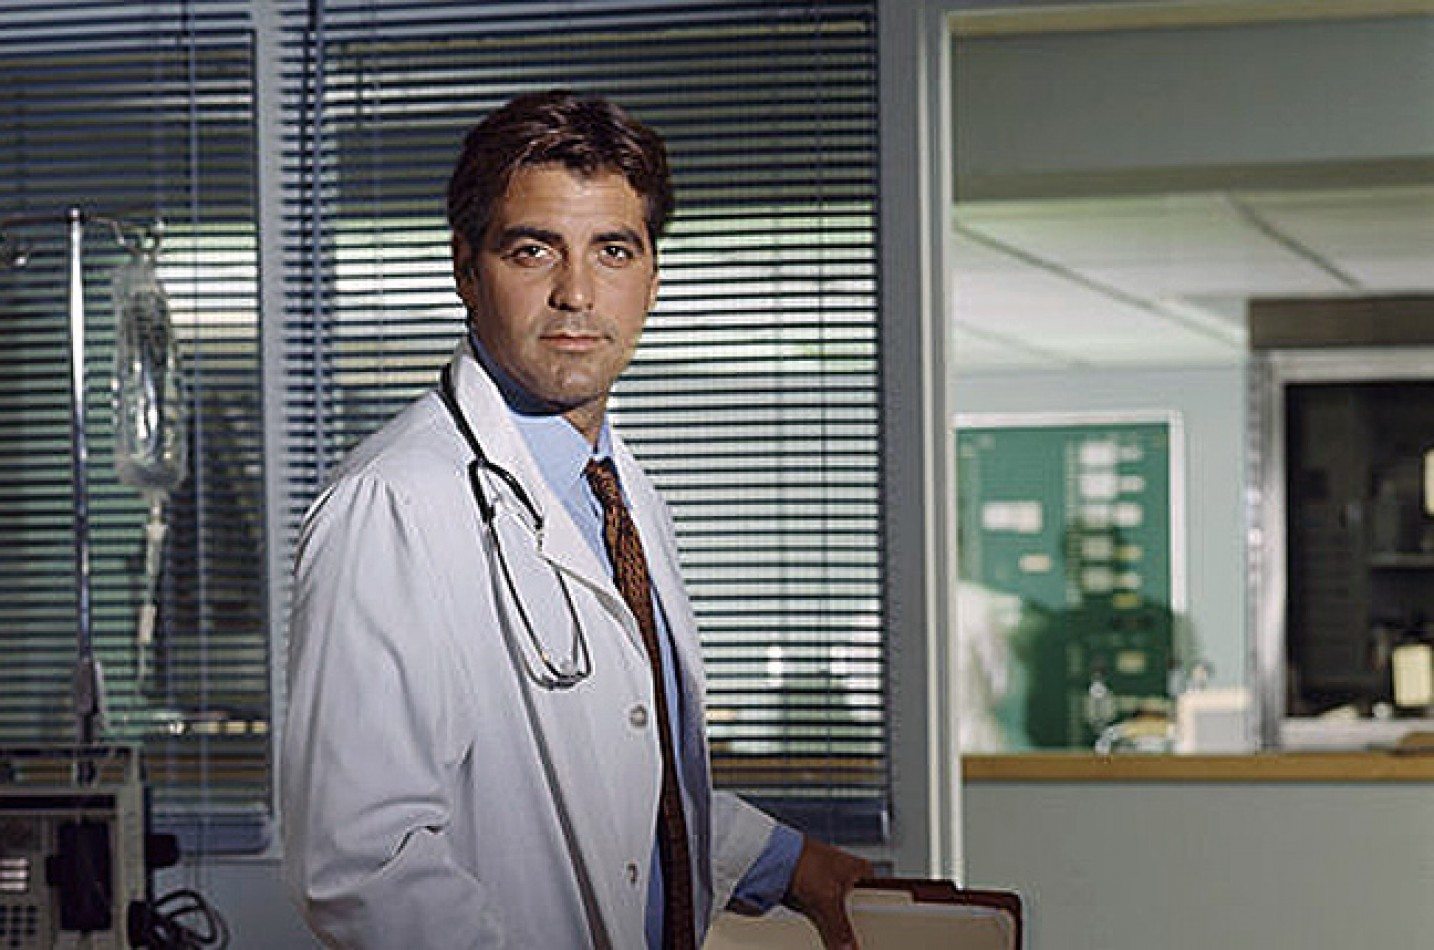 George Clooney in ER | NBC